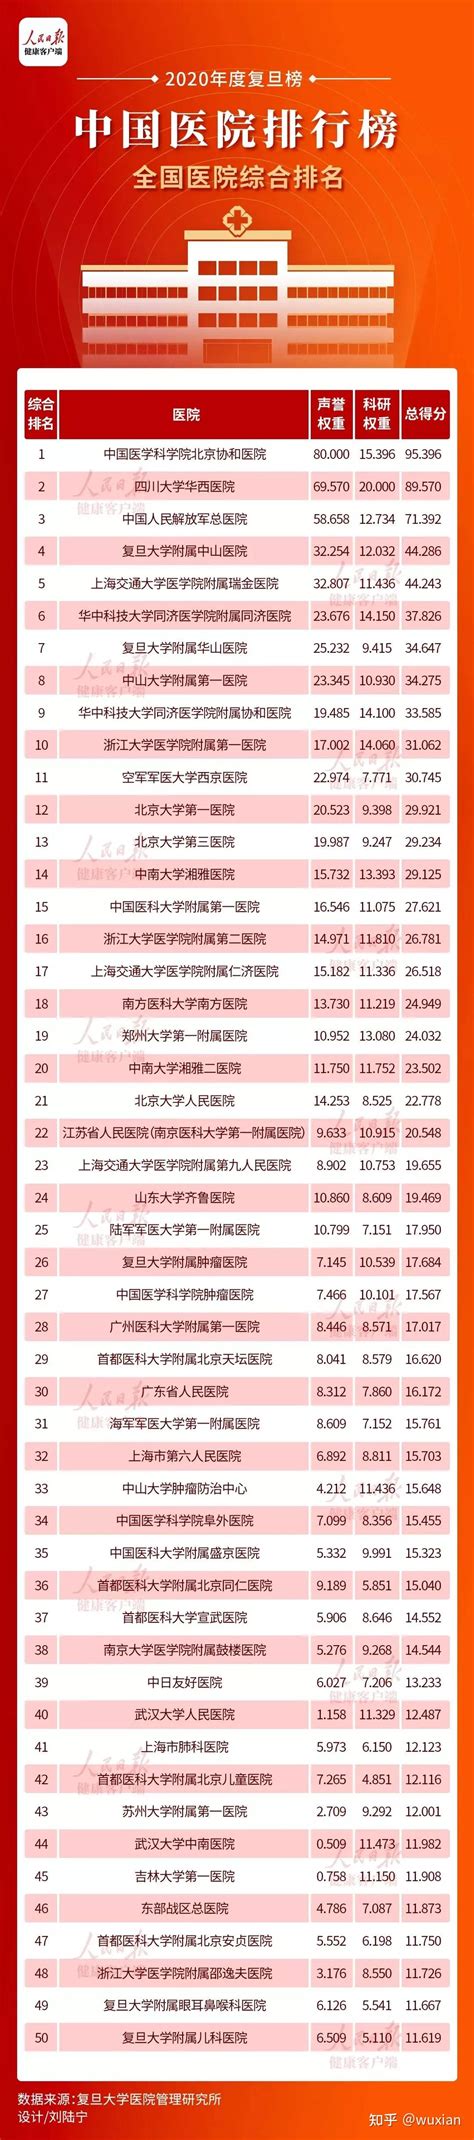 TOP100｜复旦版《2020年度中国医院排行榜》发布！ - 知乎